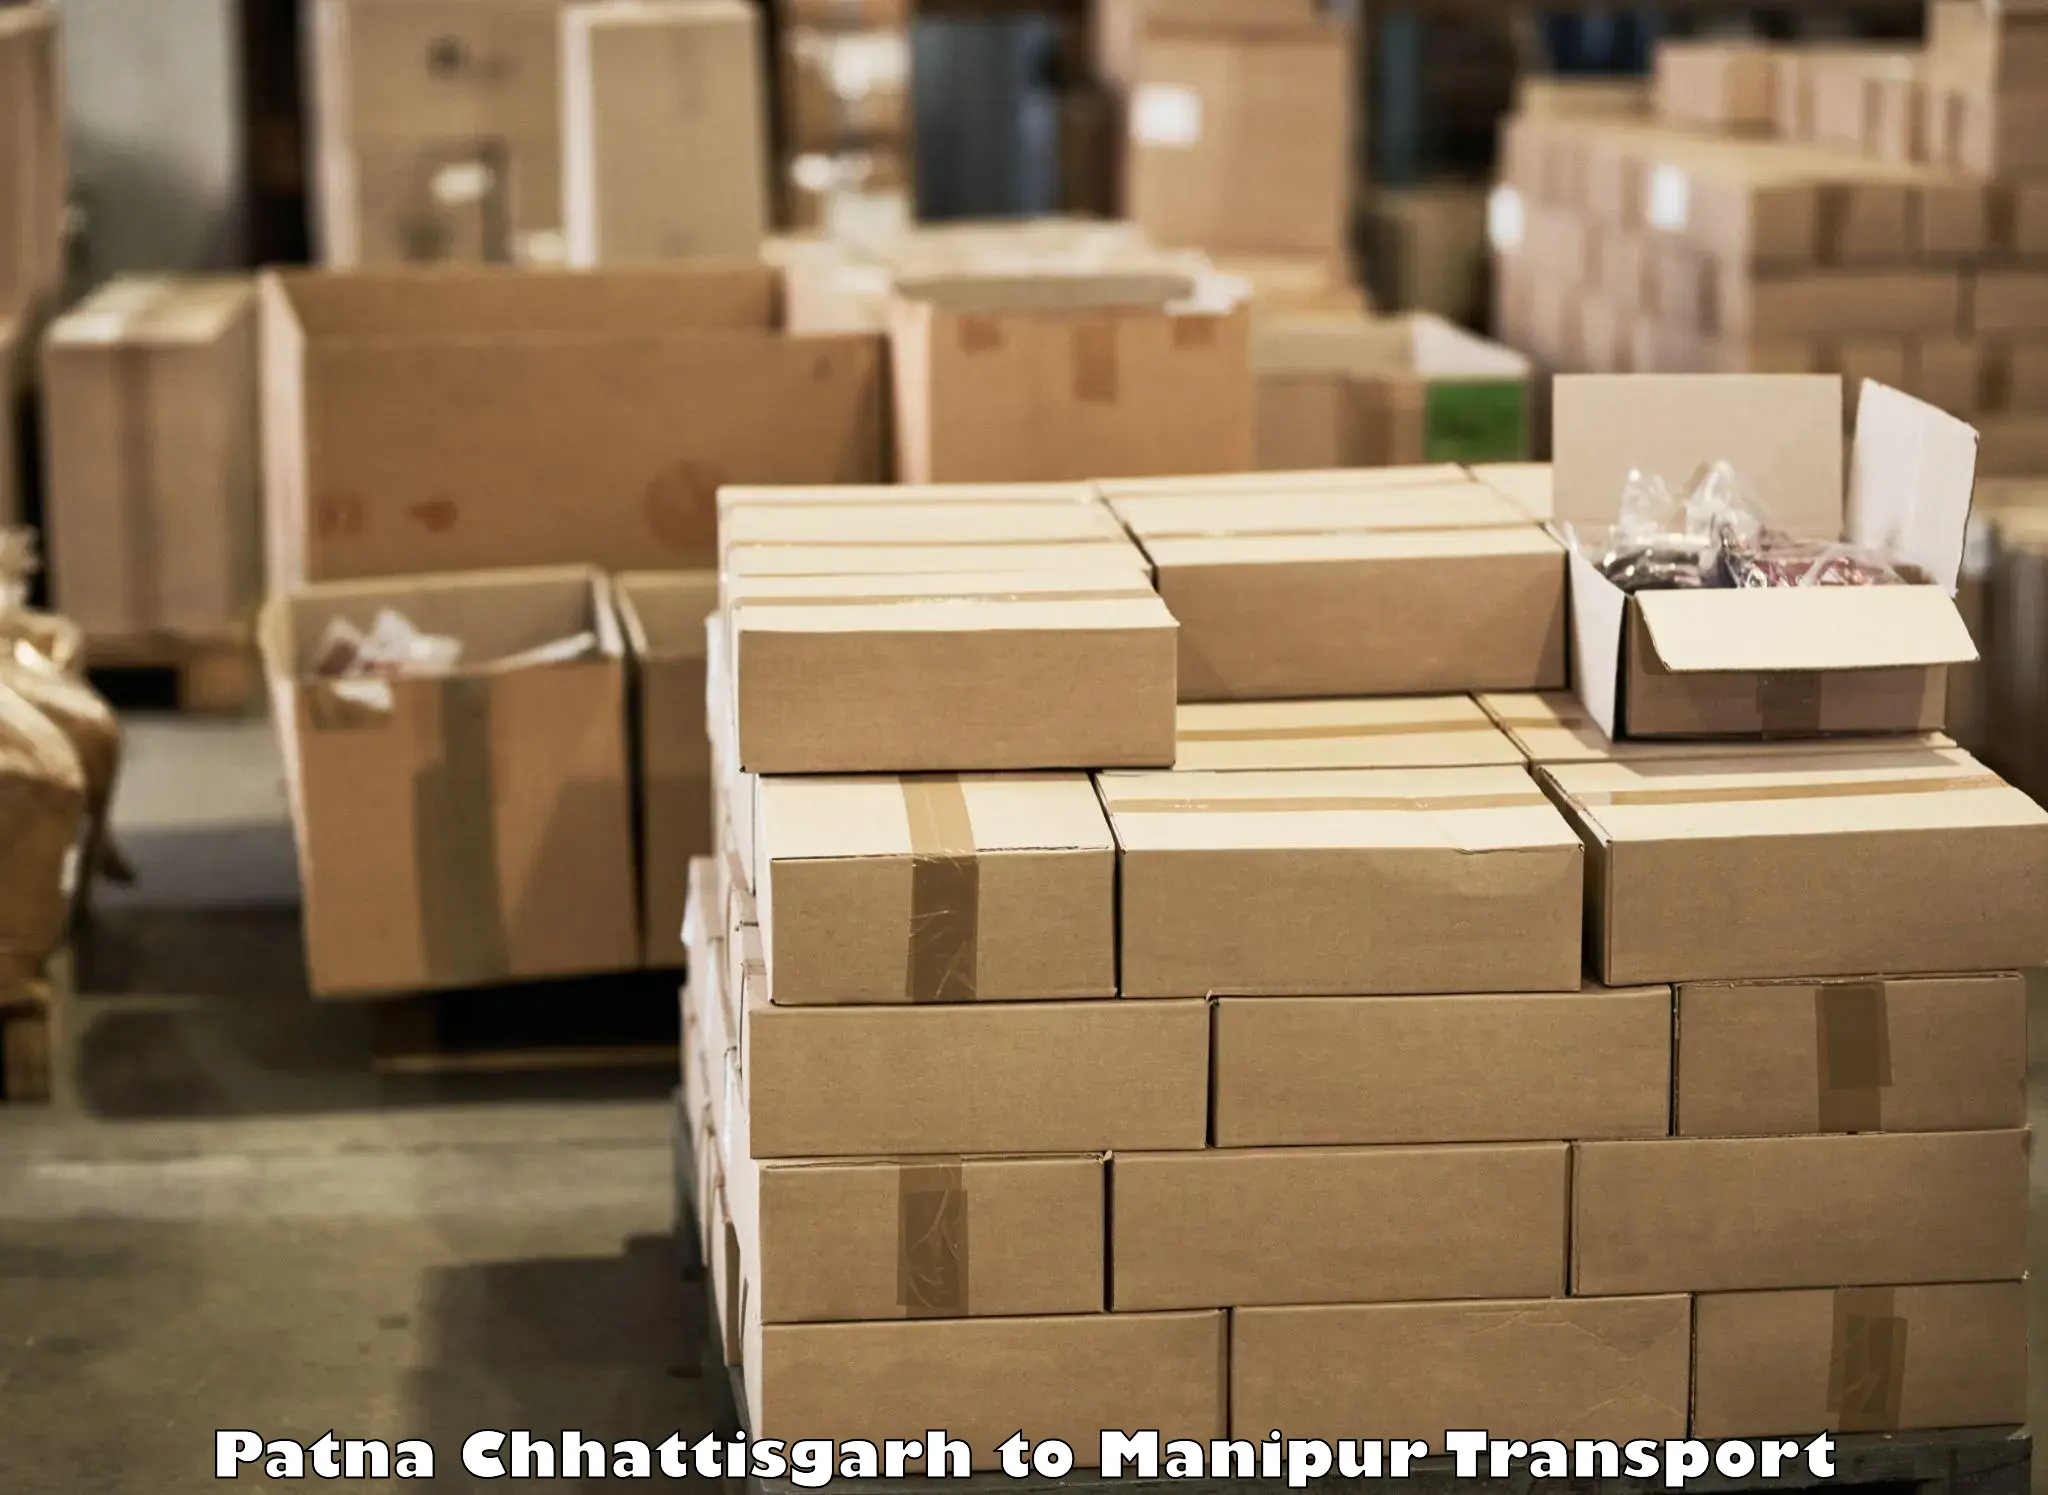 Cargo train transport services Patna Chhattisgarh to Senapati